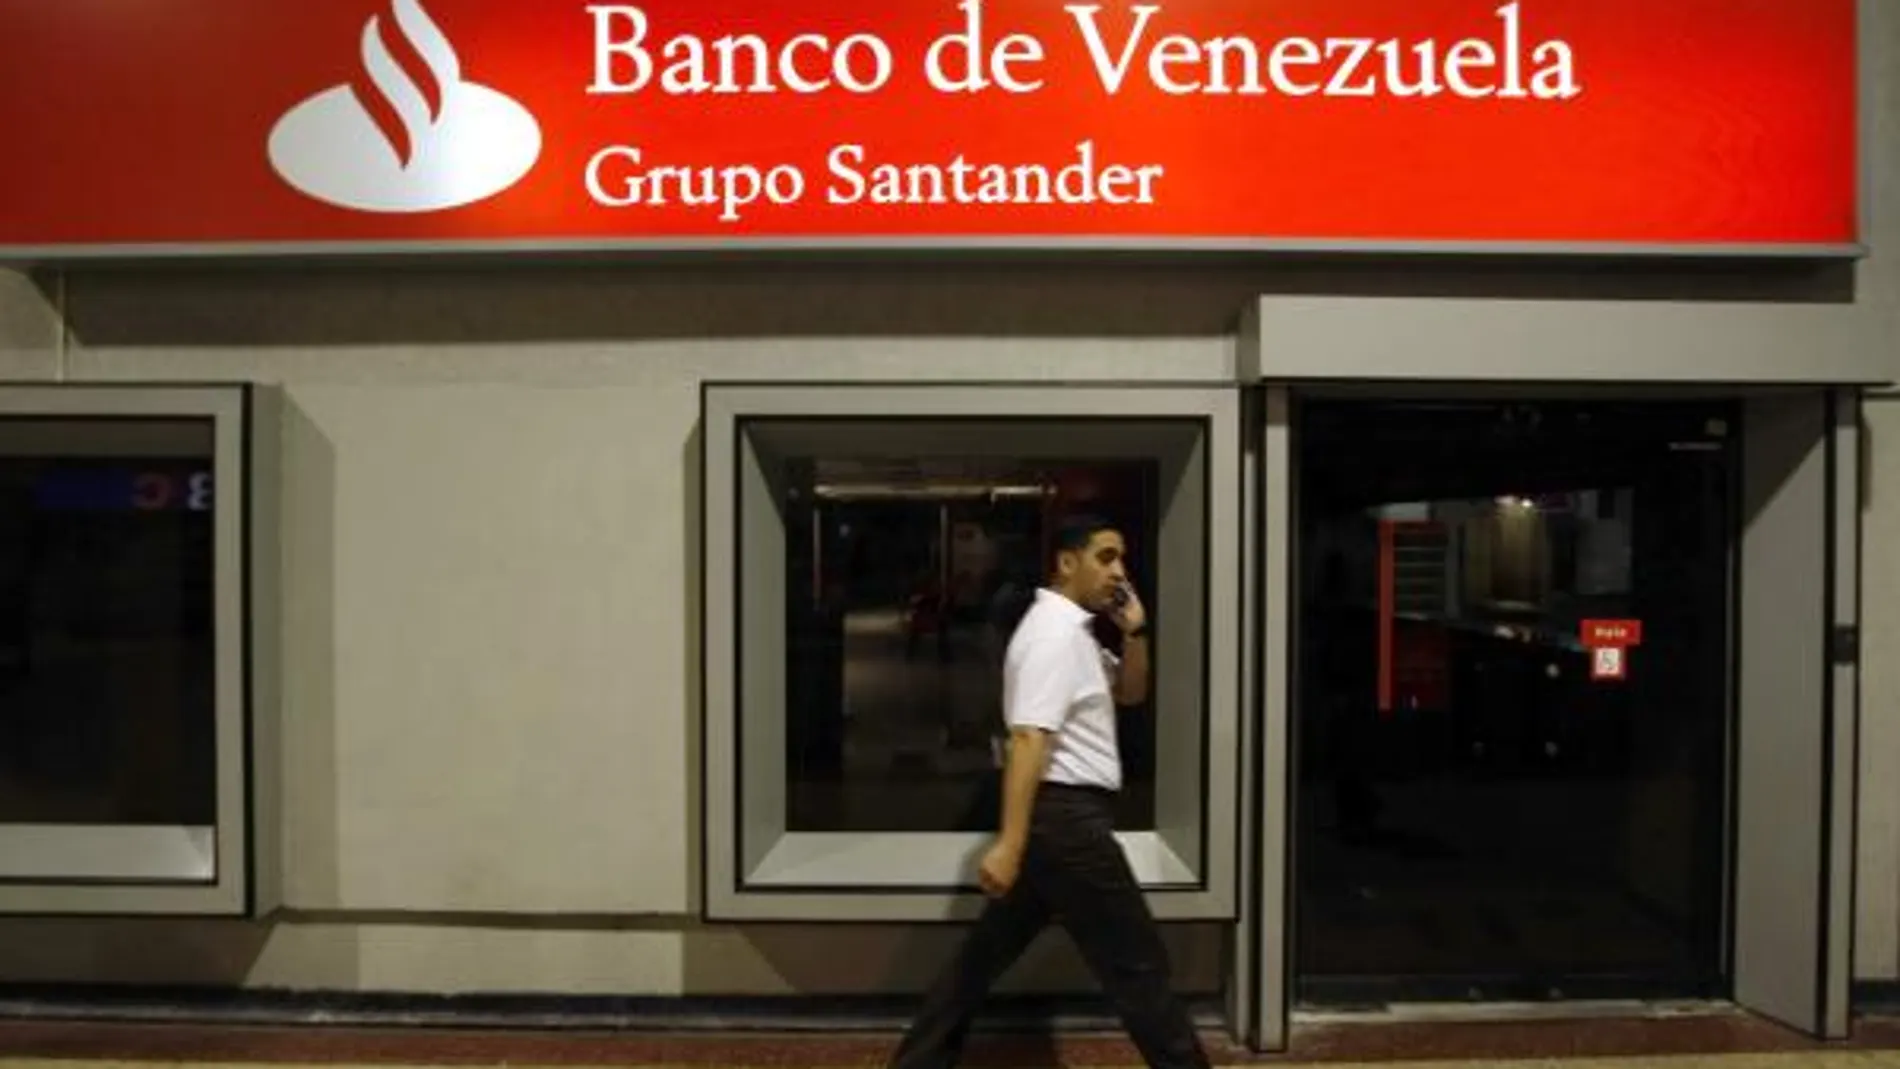 Chávez confirma nacionalización del Banco de Venezuela, filial del Santander